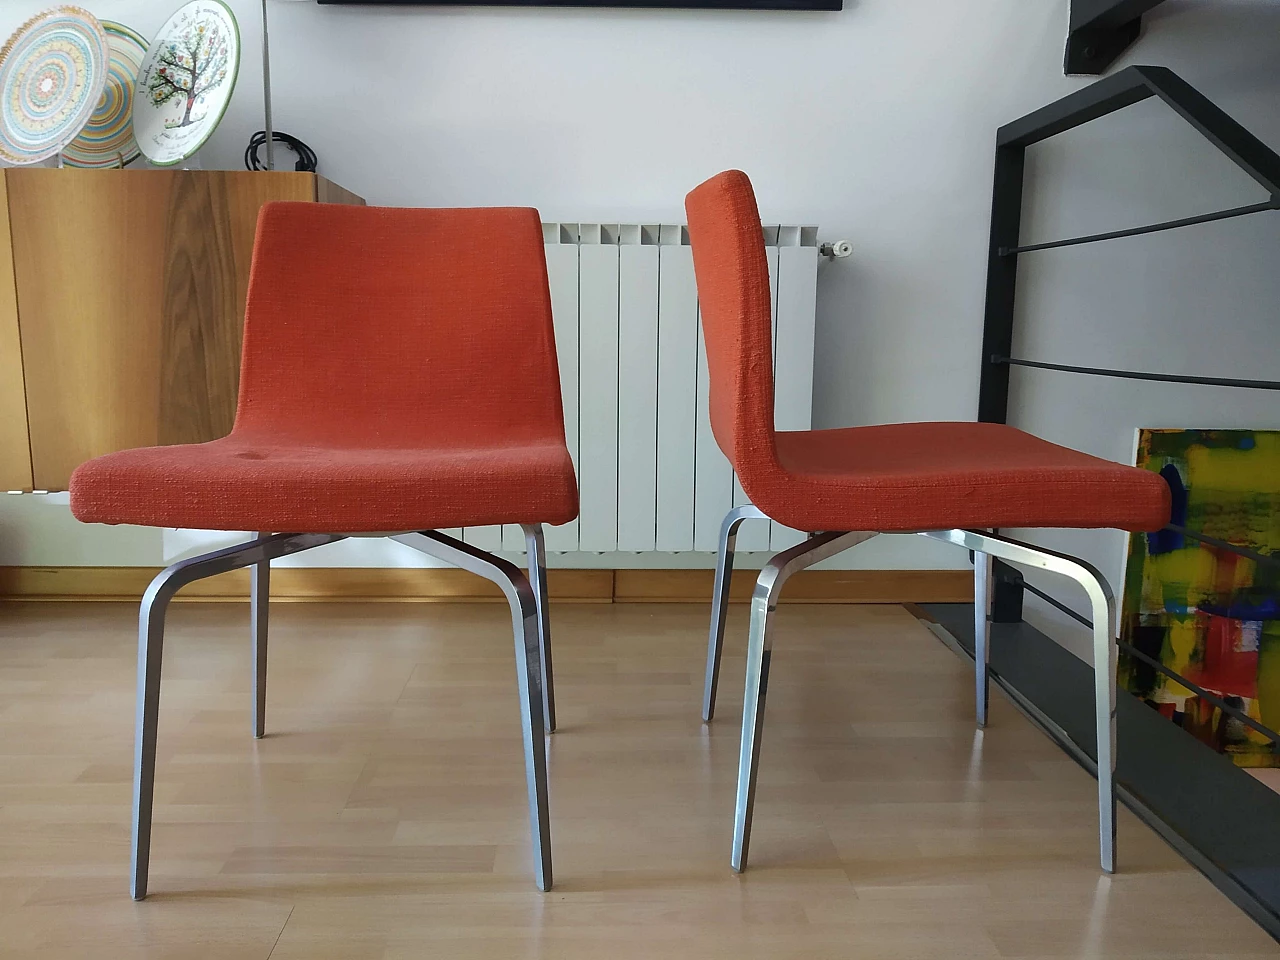 4 Hella Chairs by Mauro Lipparini for MisuraEmme 1477293